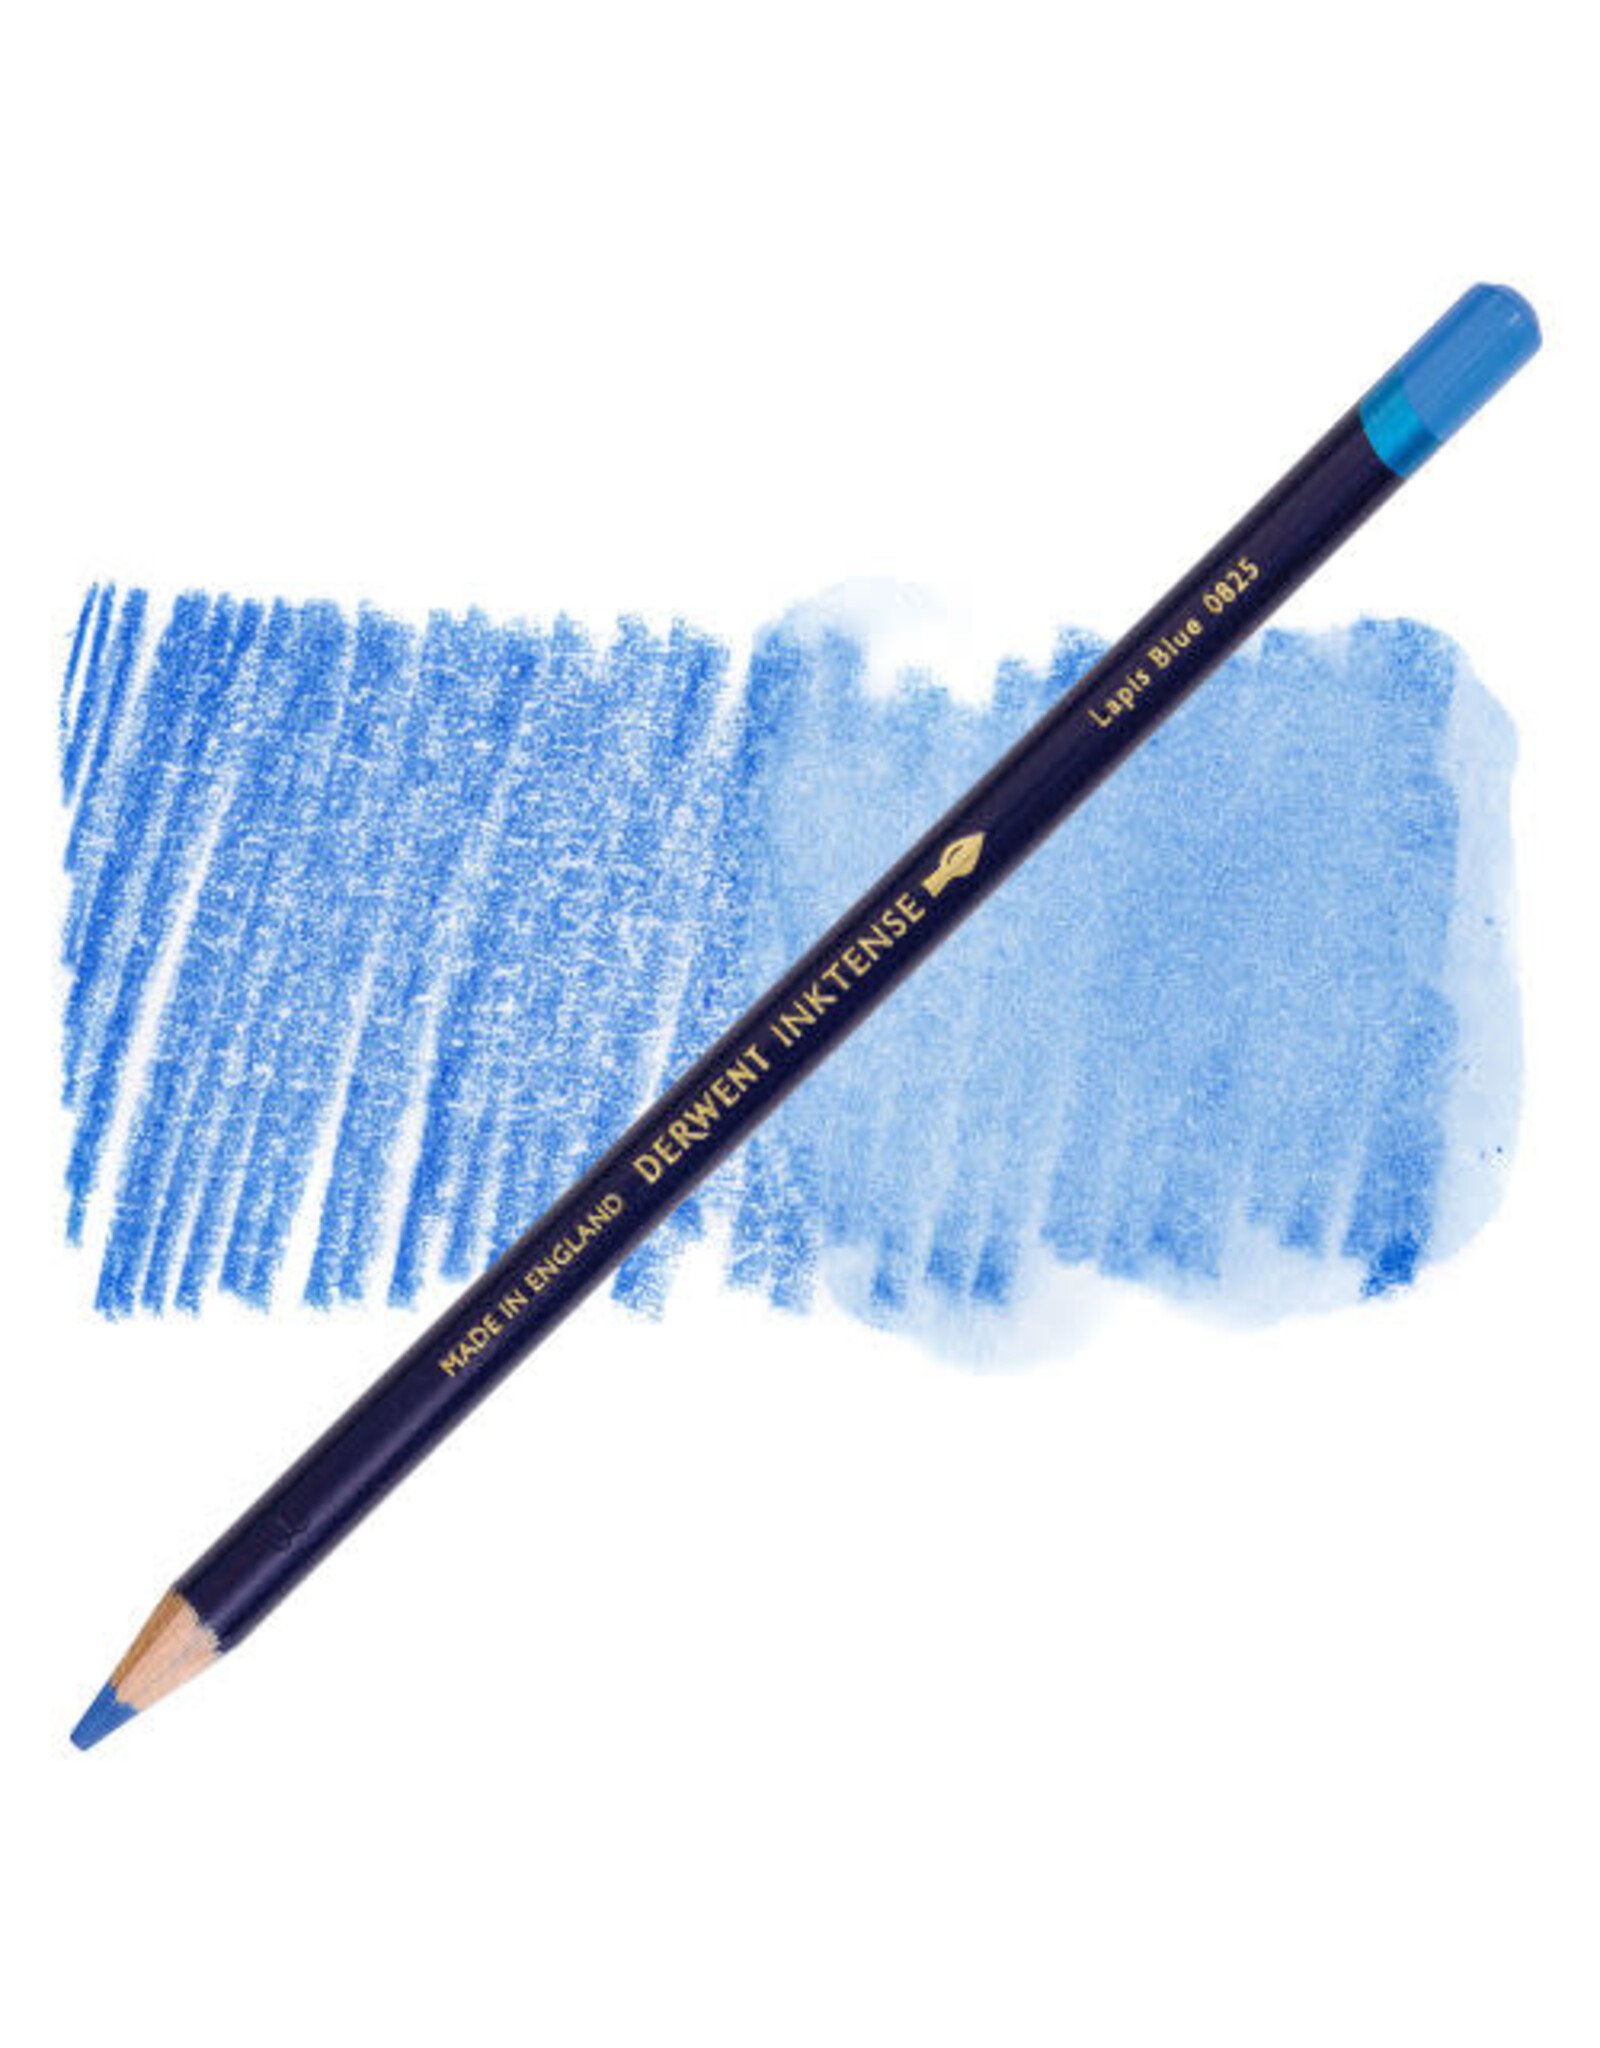 DERWENT INKTENSE PENCIL - LAPIS BLUE